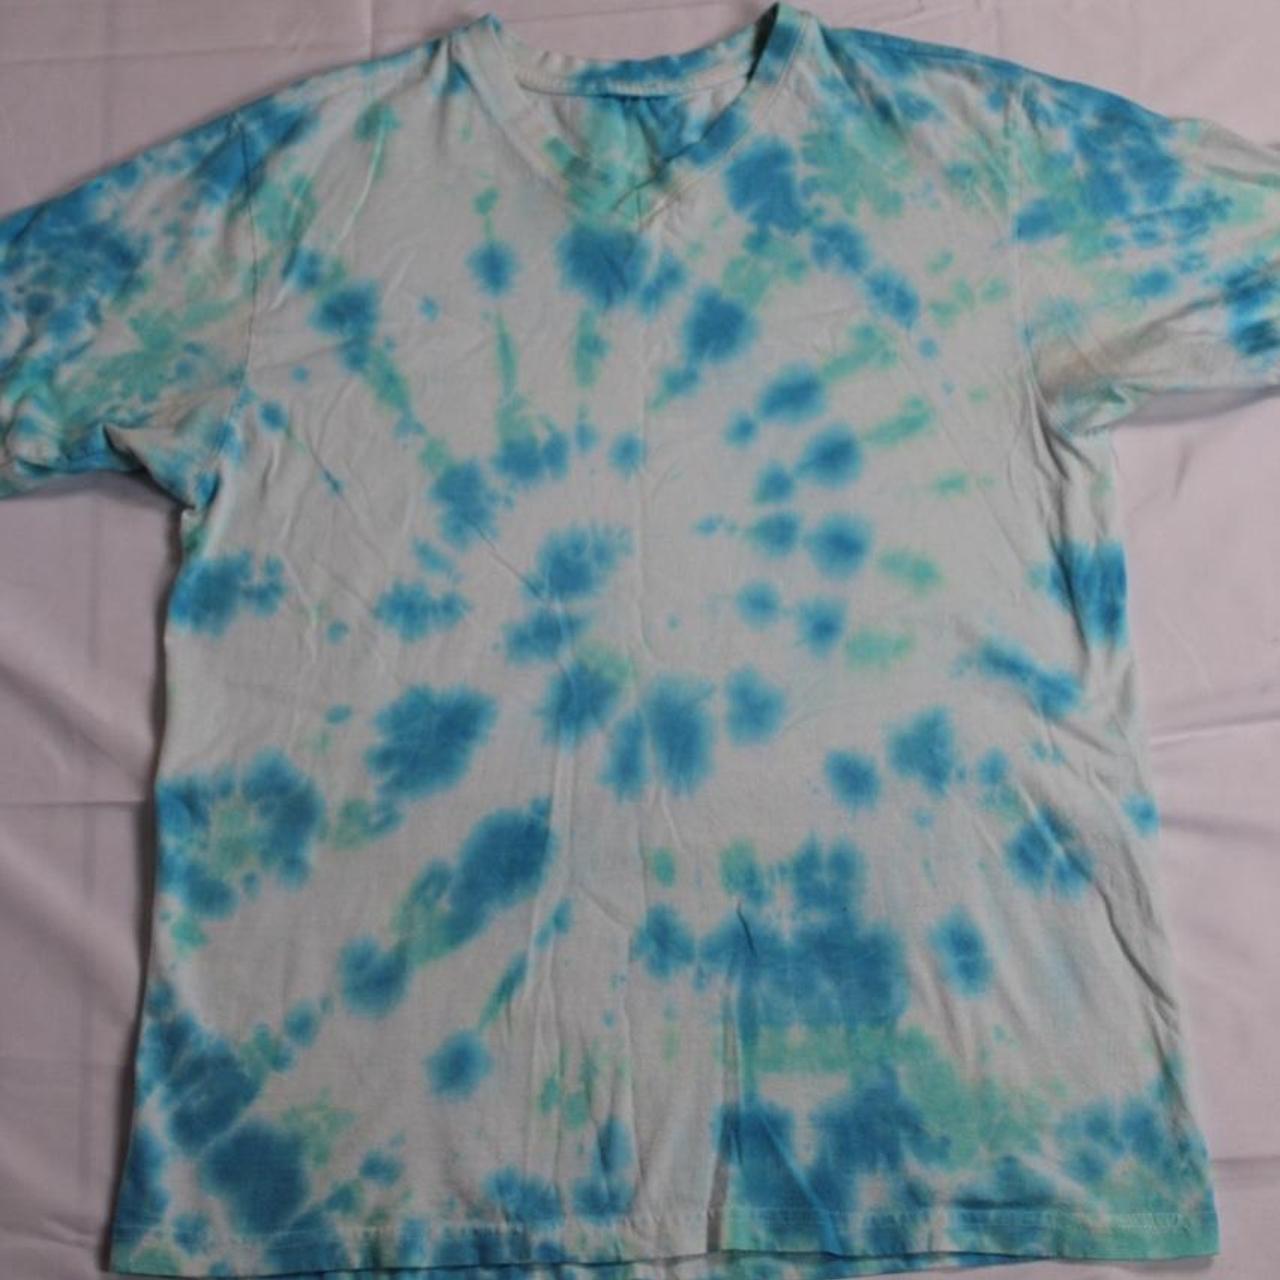 Product Image 3 - Tye dye shirt size medium